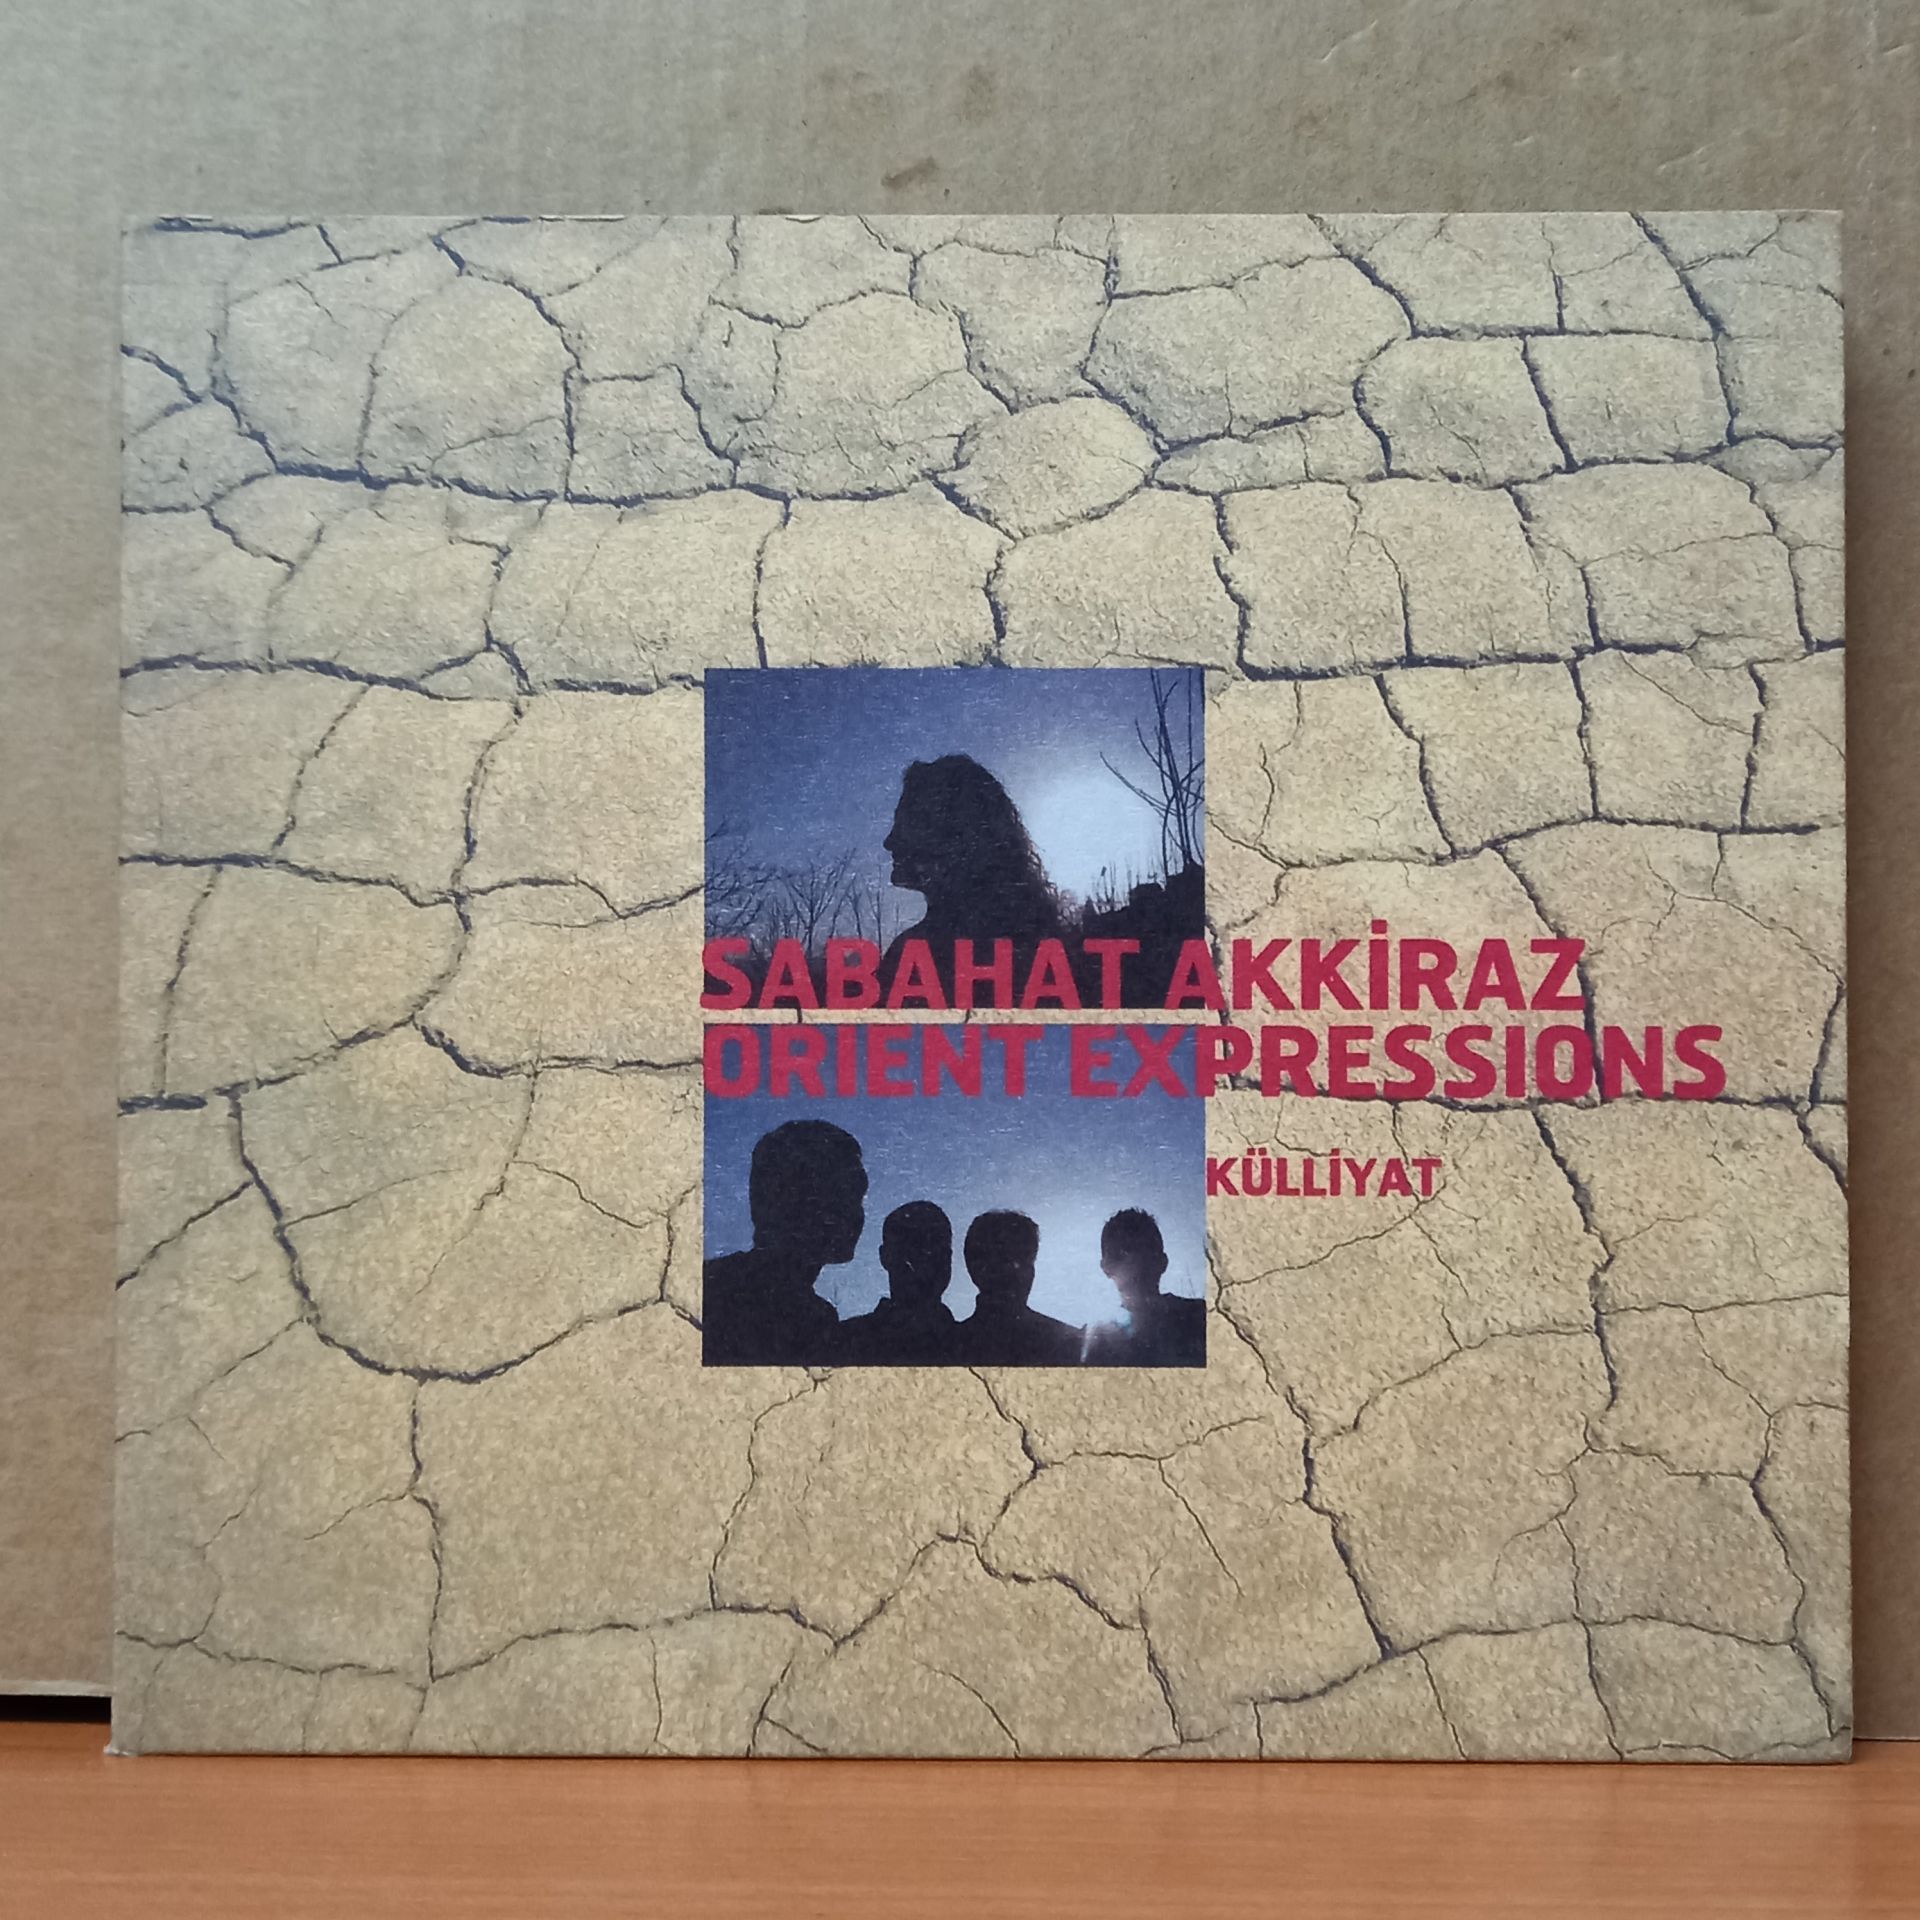 SABAHAT AKKİRAZ - KÜLLİYAT / ORIENT EXPRESSIONS (2006) - CD 2.EL